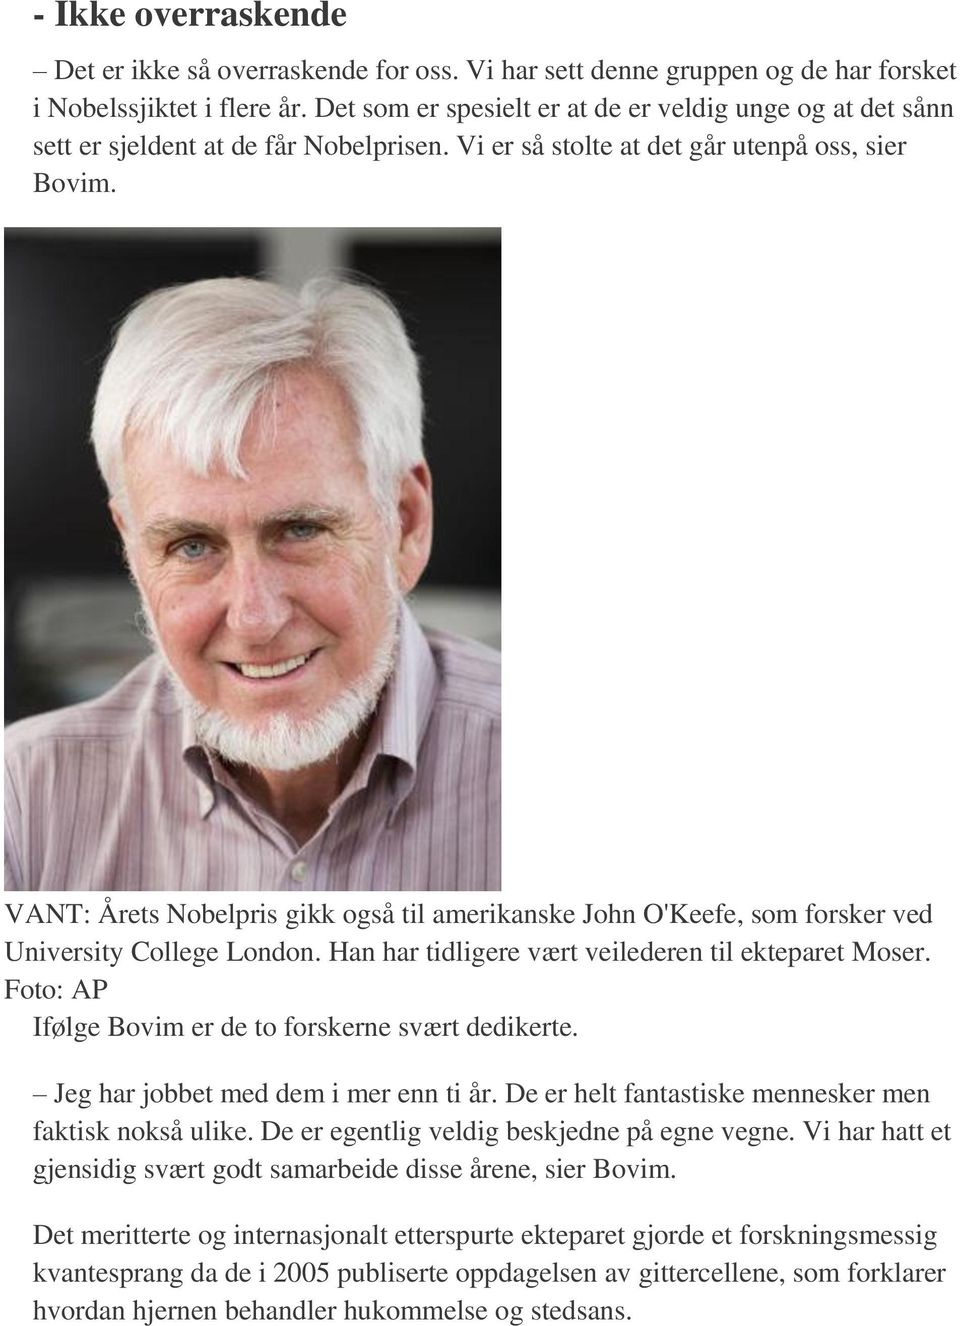 VANT: Årets Nobelpris gikk også til amerikanske John O'Keefe, som forsker ved University College London. Han har tidligere vært veilederen til ekteparet Moser.